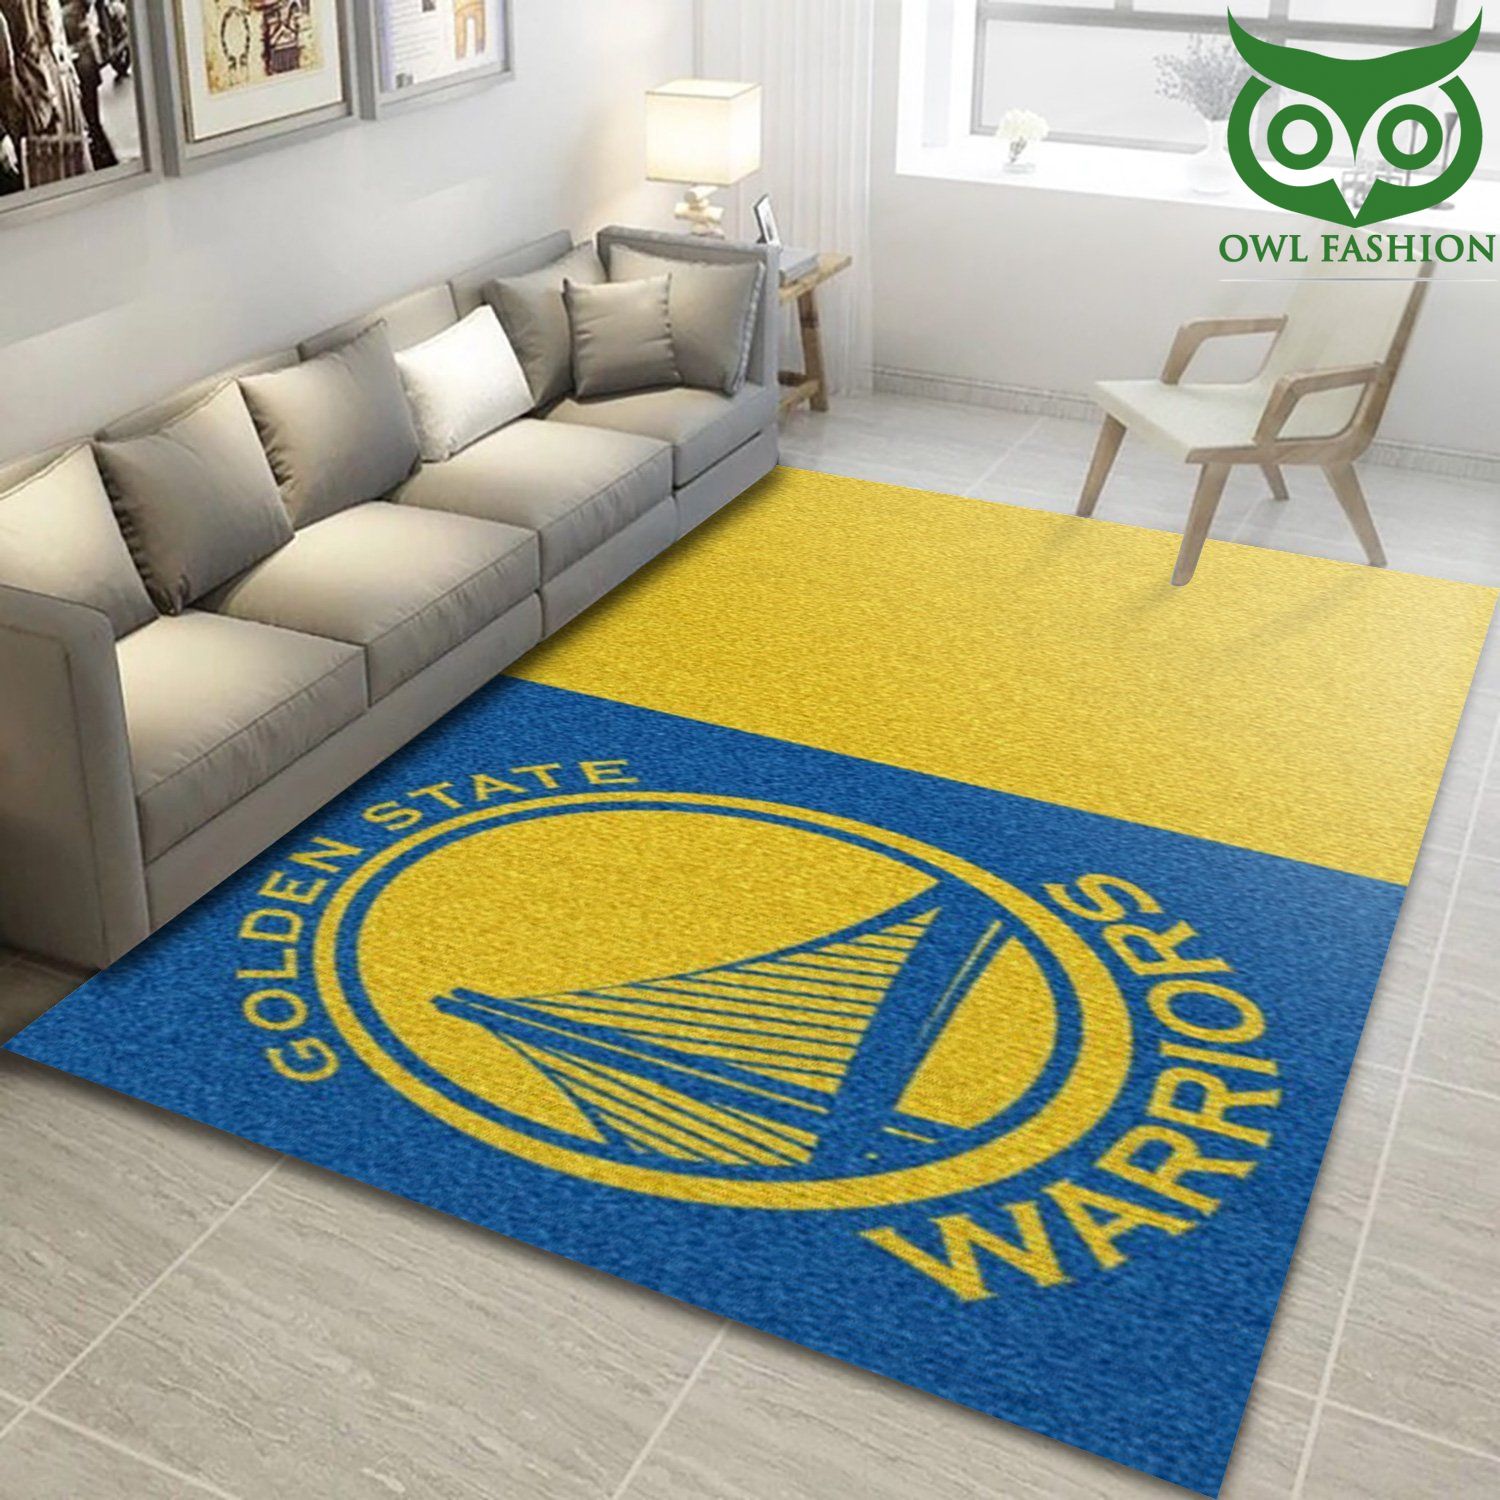 Golden State Warriors Nba room decorate floor carpet rug 